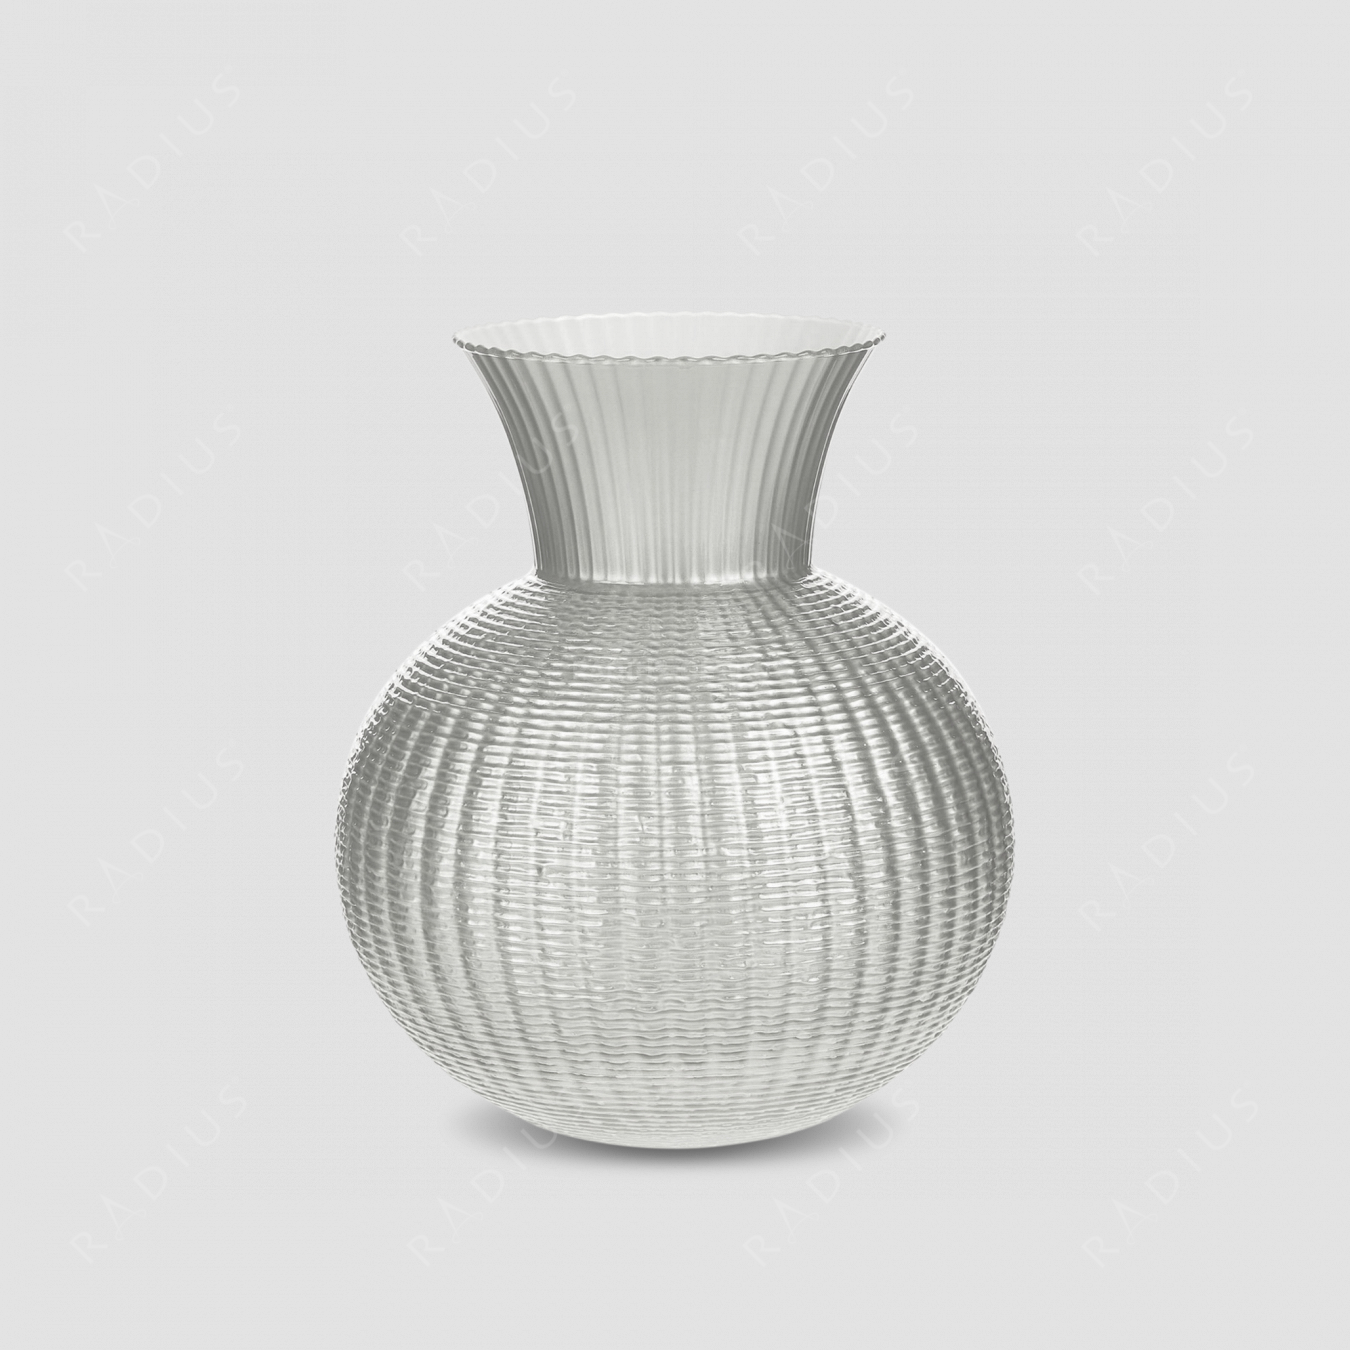 Стеклянная ваза для цветов, диаметр: 25 см, высота: 30 см, материал: стекло, цвет: жемчужно-белый, внутри прозрачный белый, серия Ophelia, IVV (Italy), Италия